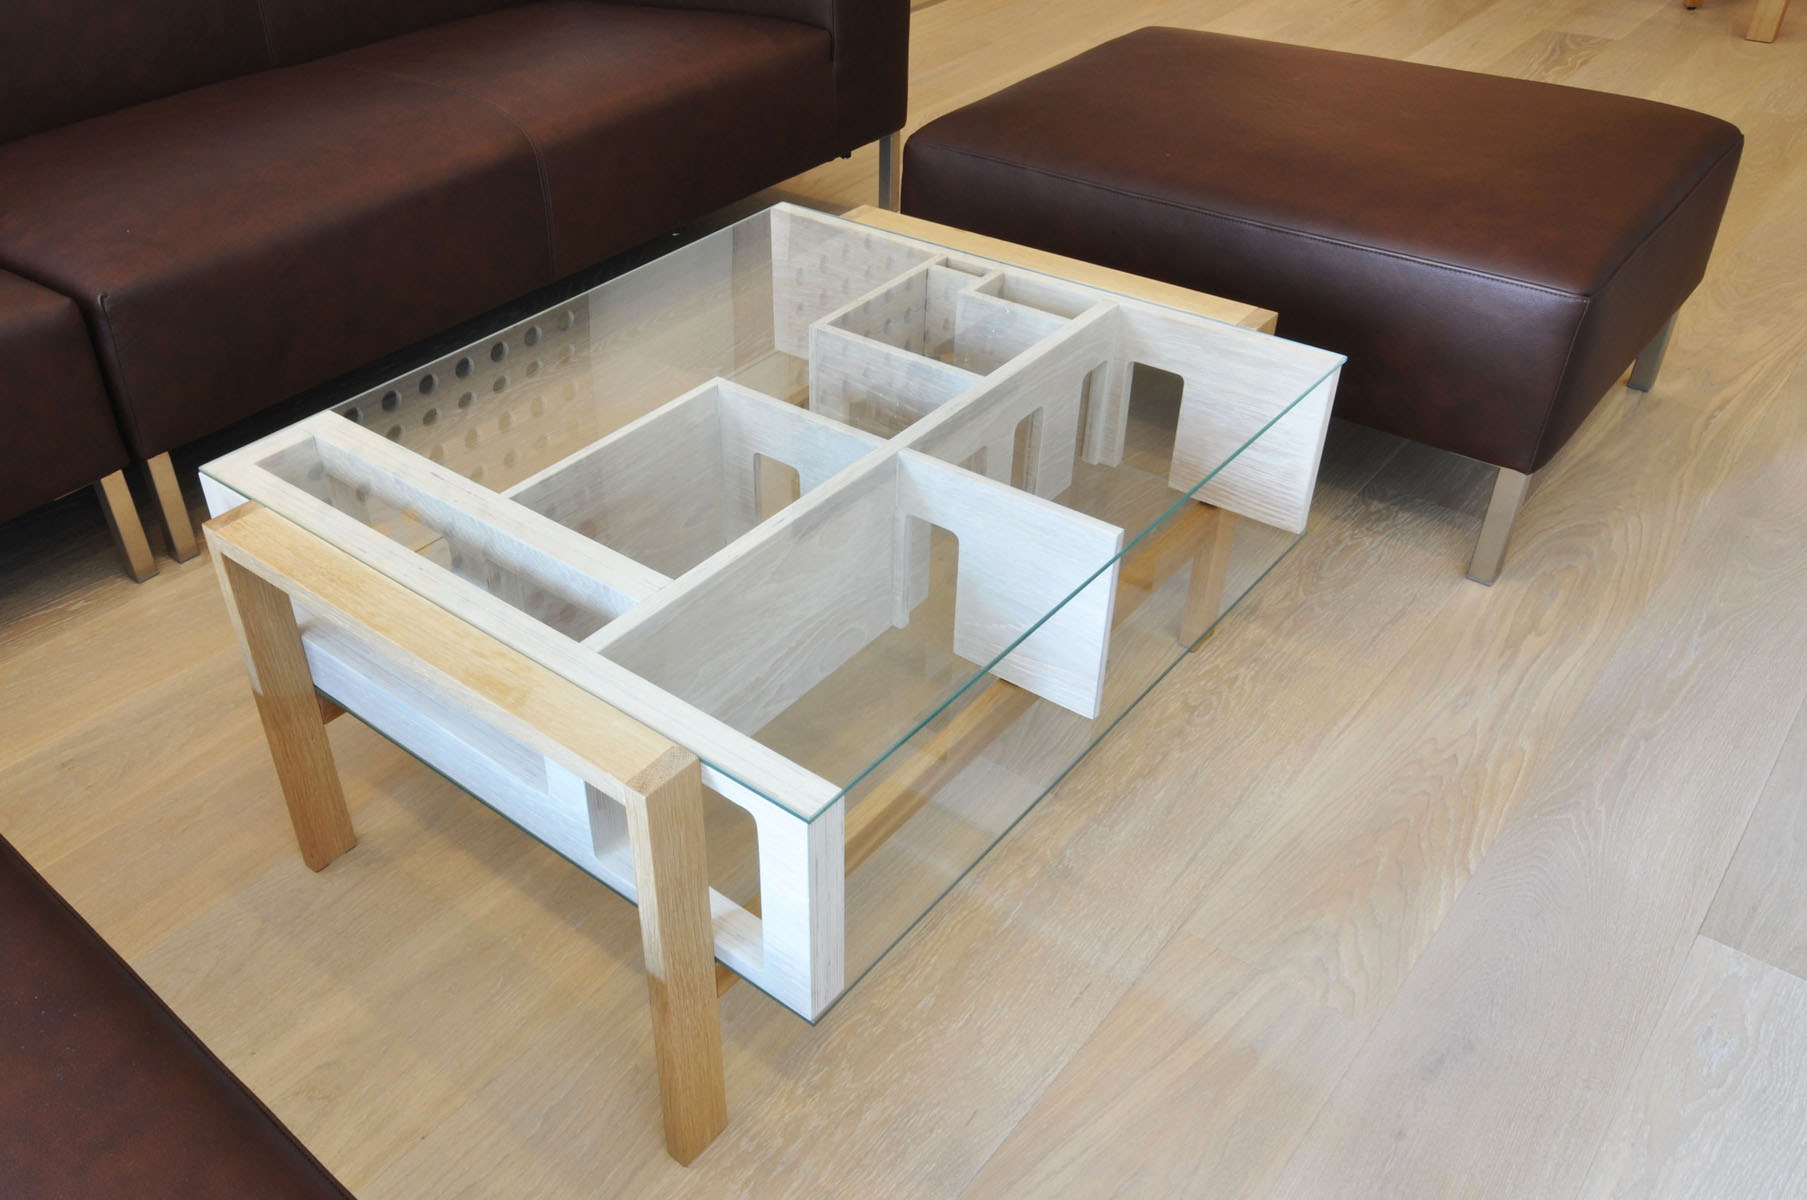 Konferenčný stolík je 3D modelom bytu, takže si môžete odložiť časopis alebo diaľkový ovládač do jedálne alebo detskej izby, prípadne na lodžiu.